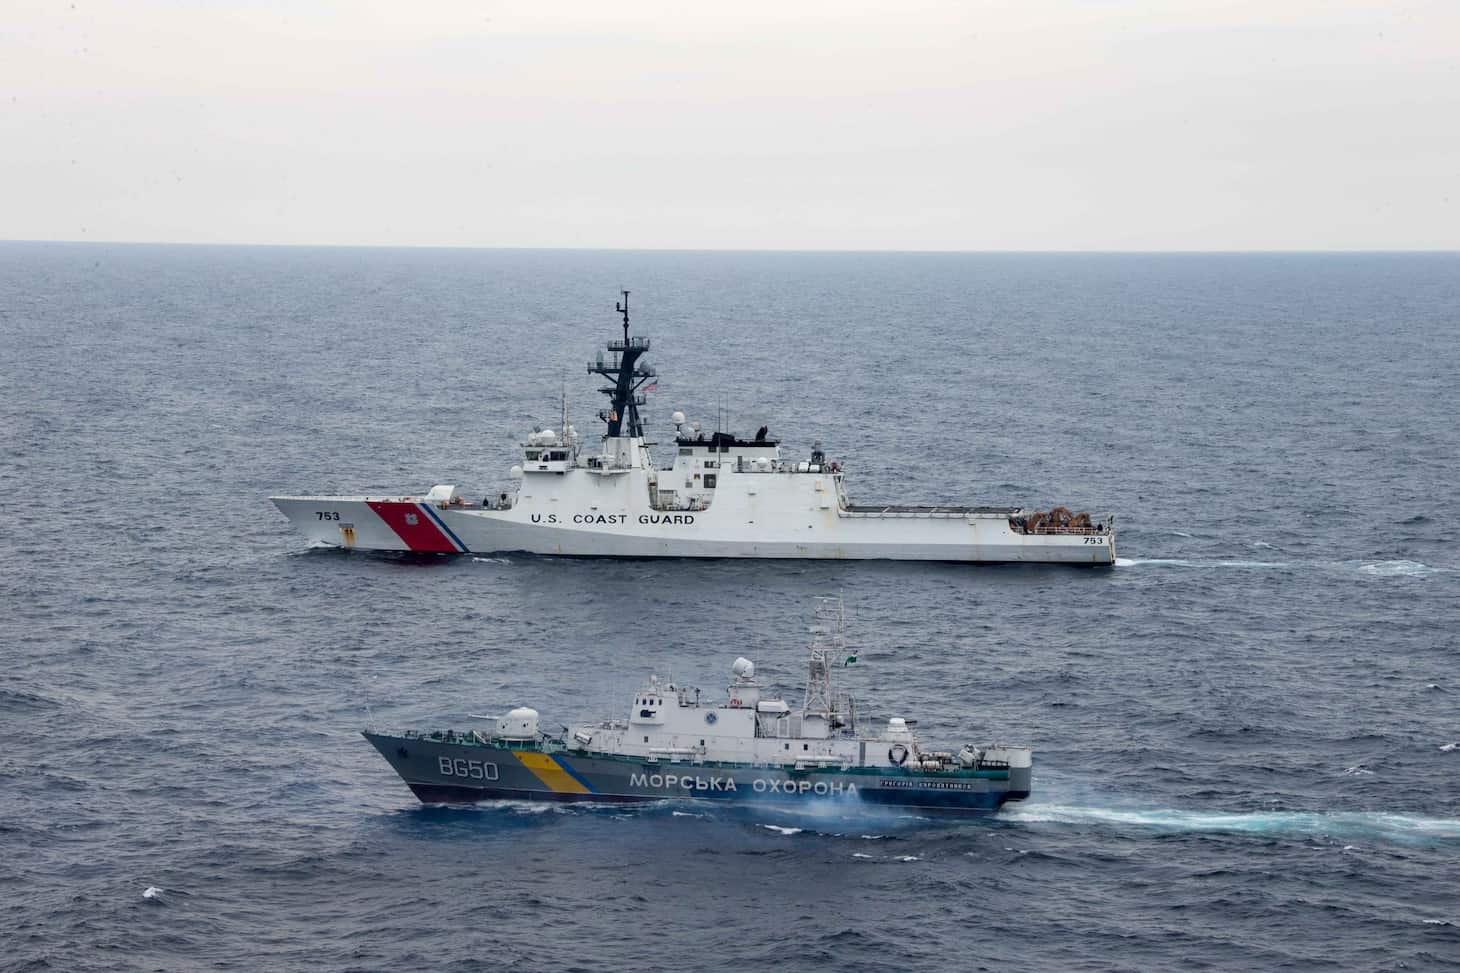 Куттер Hamilton Берегової охорони США разом з кораблем «Григорій Куроп'ятніков» (BG50)